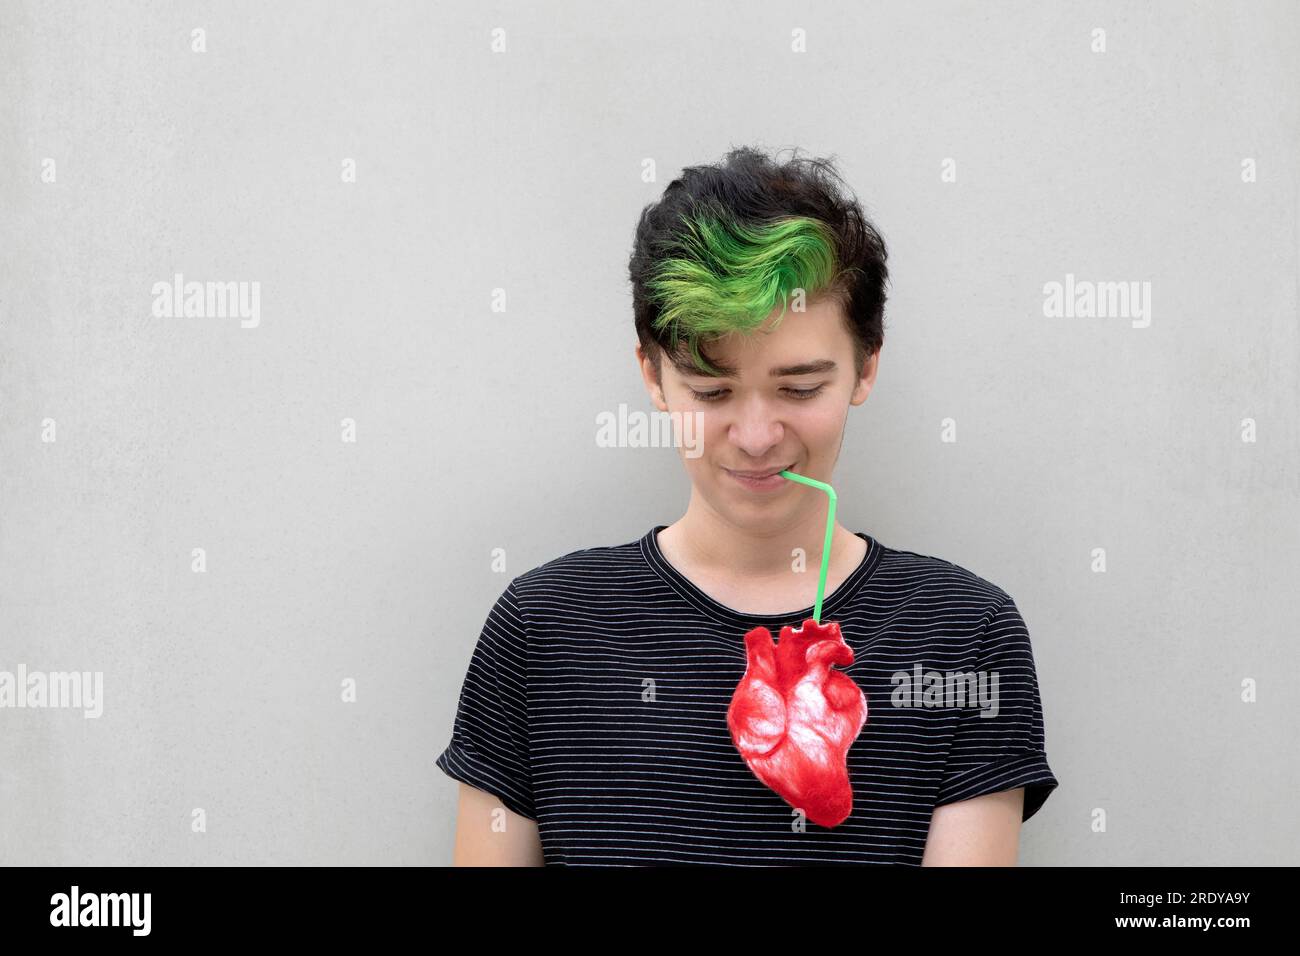 Ein Teenager mit grünem Haar trinkt aus dem Herzen vor grauem Hintergrund Stockfoto